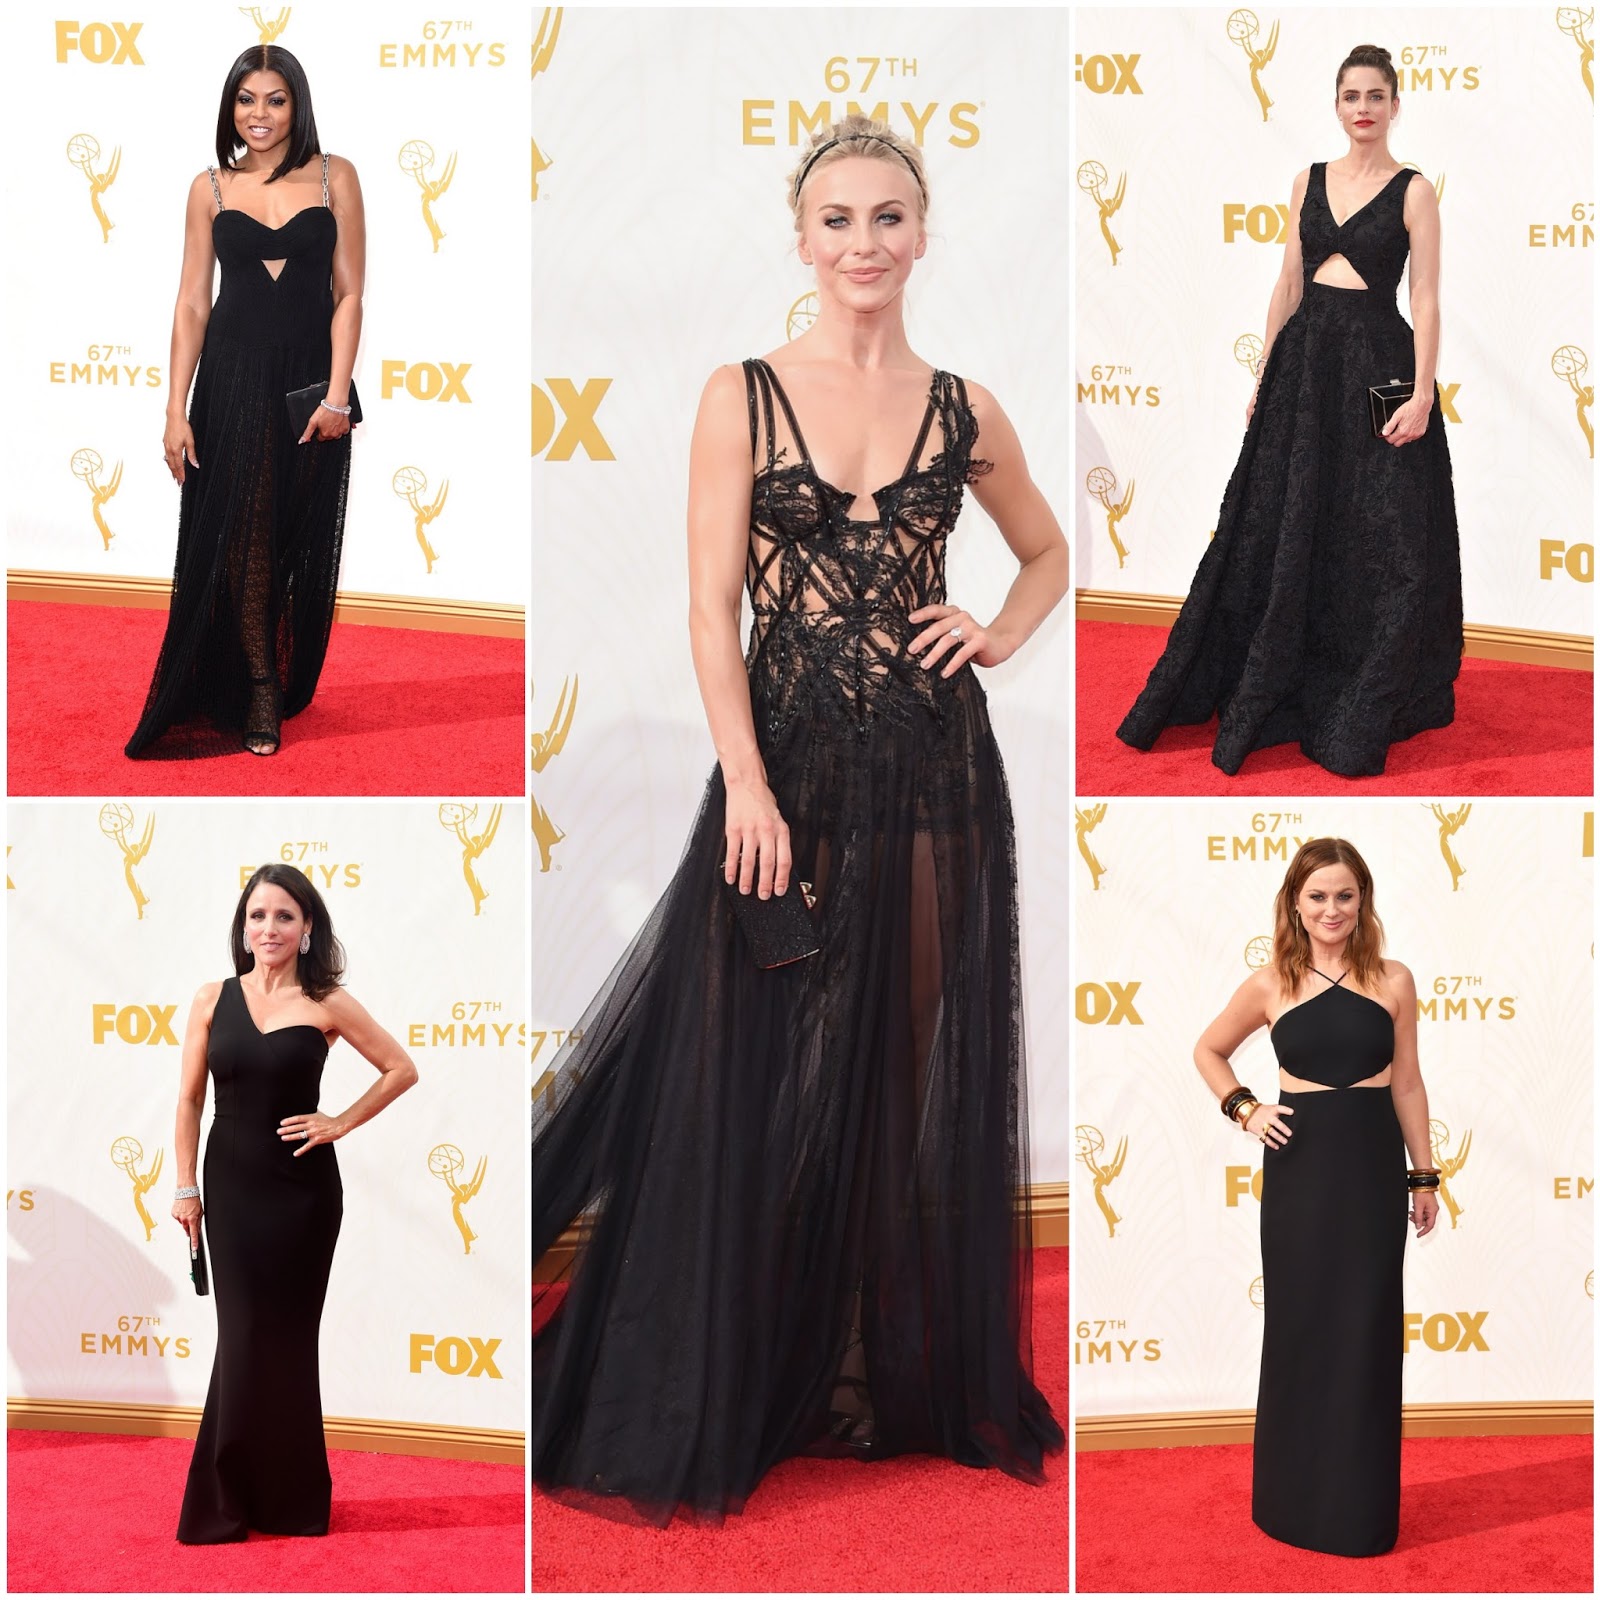 Amanda Peet In Michael Kors - 2015 Emmy Awards - Red Carpet Fashion Awards